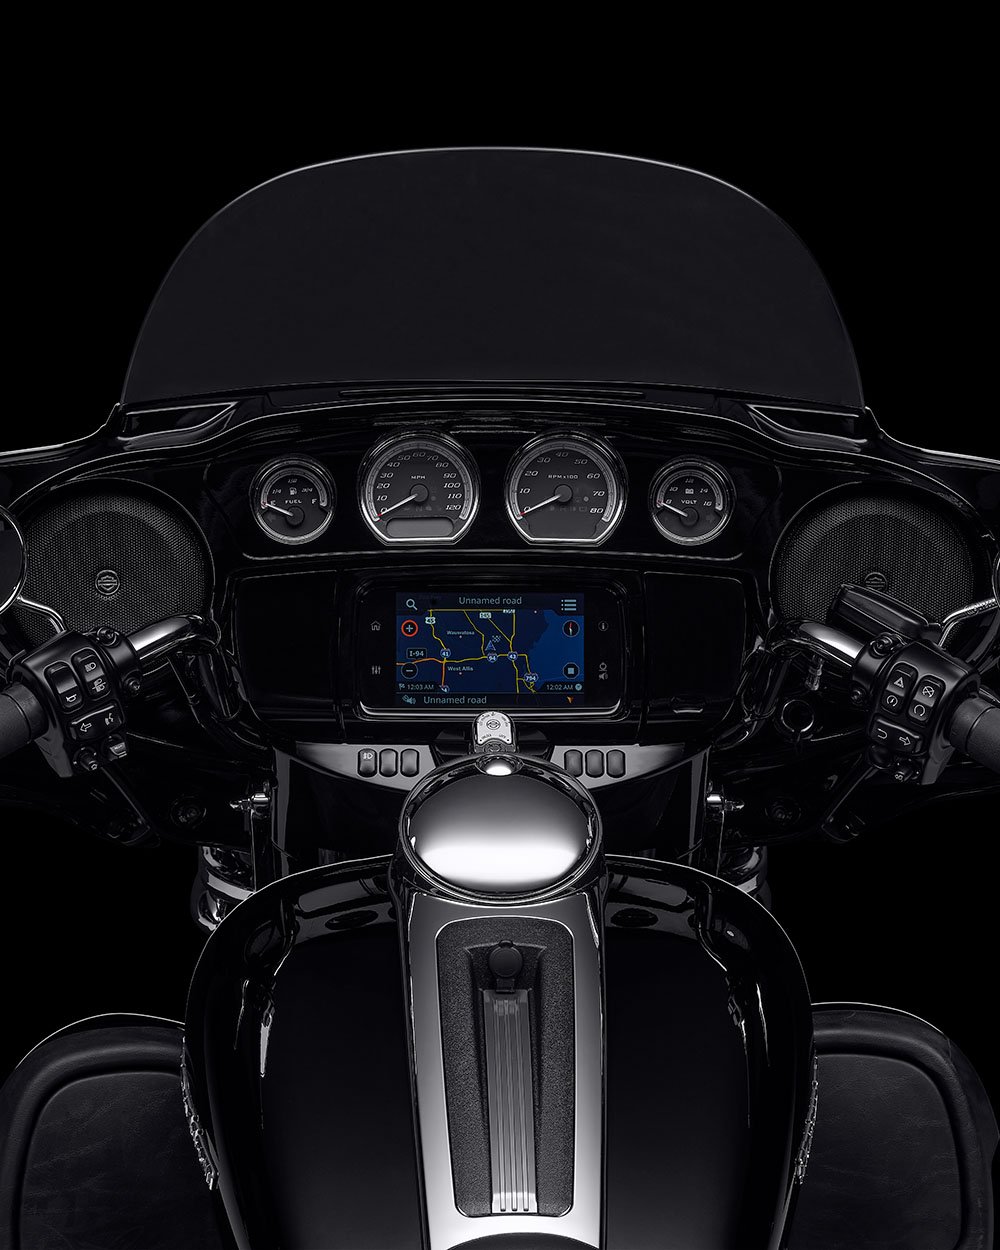 Boom Box GTS Infotainment system på en Ultra Limited motorcykel